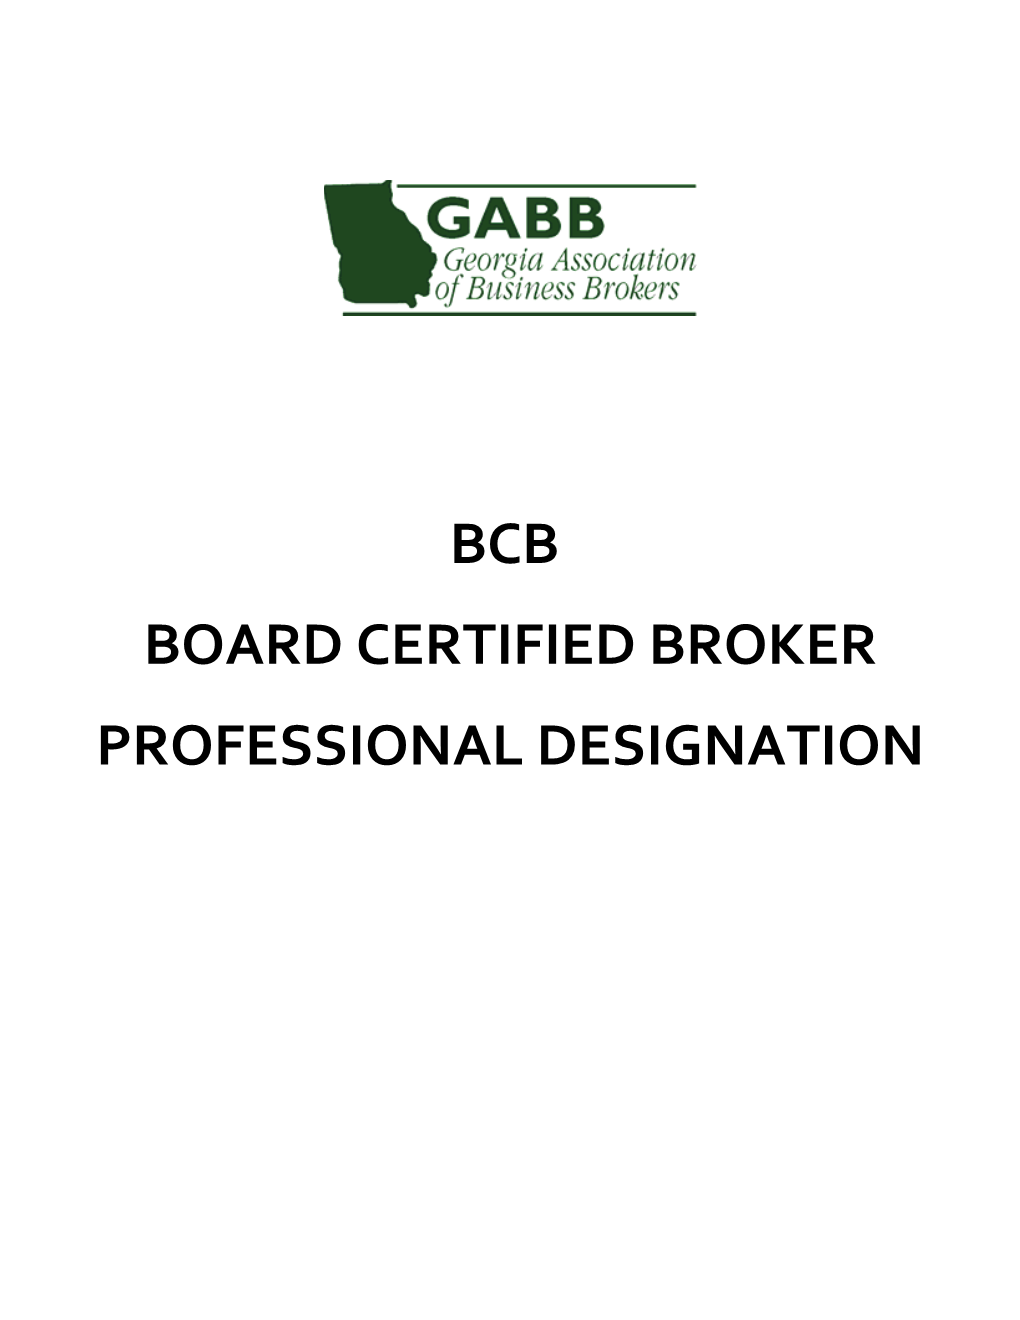 Board Certified Broker